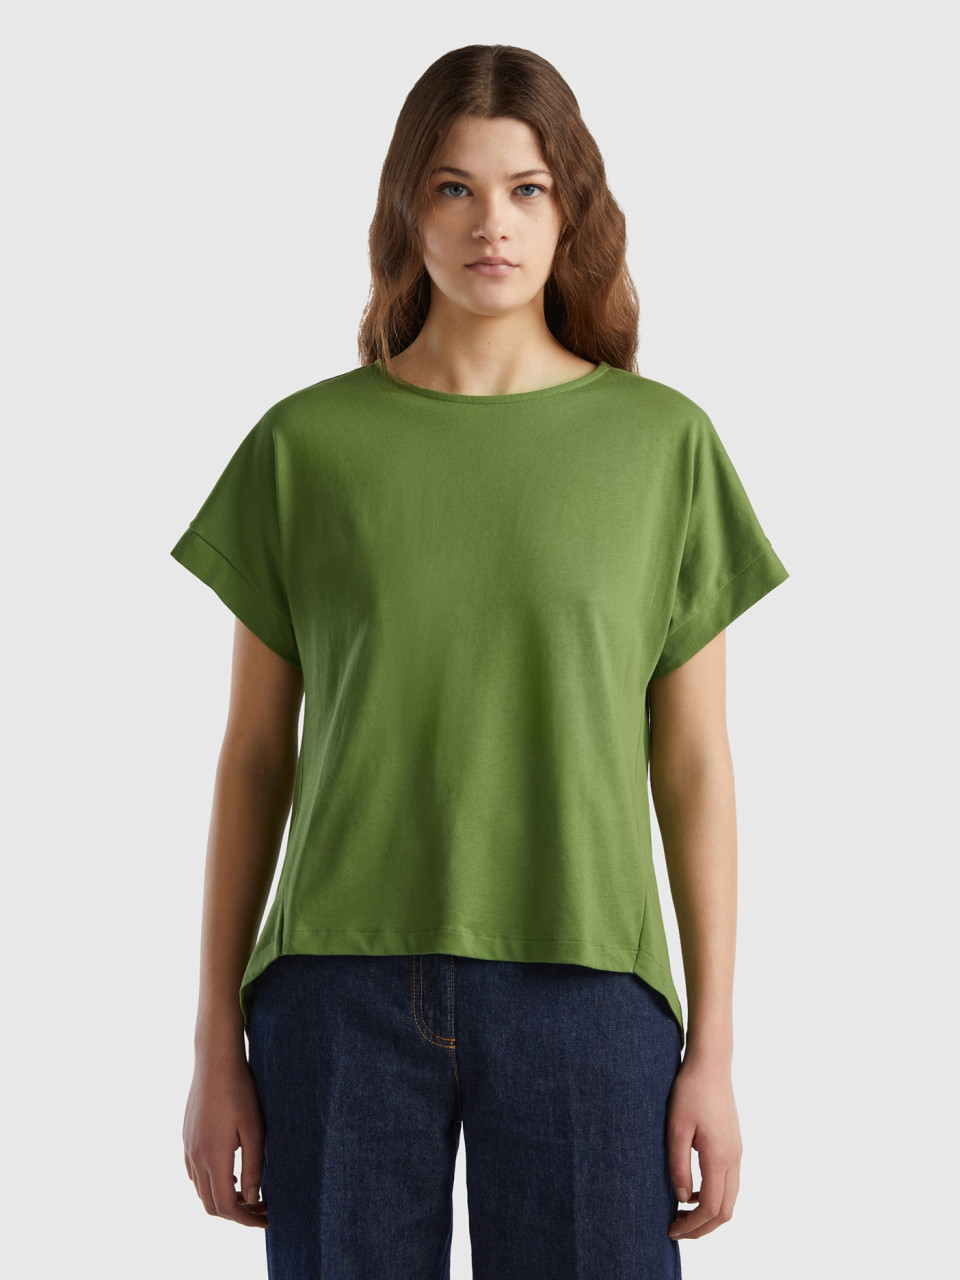 Benetton, T-shirt With Kimono Sleeves, Military Green, Women